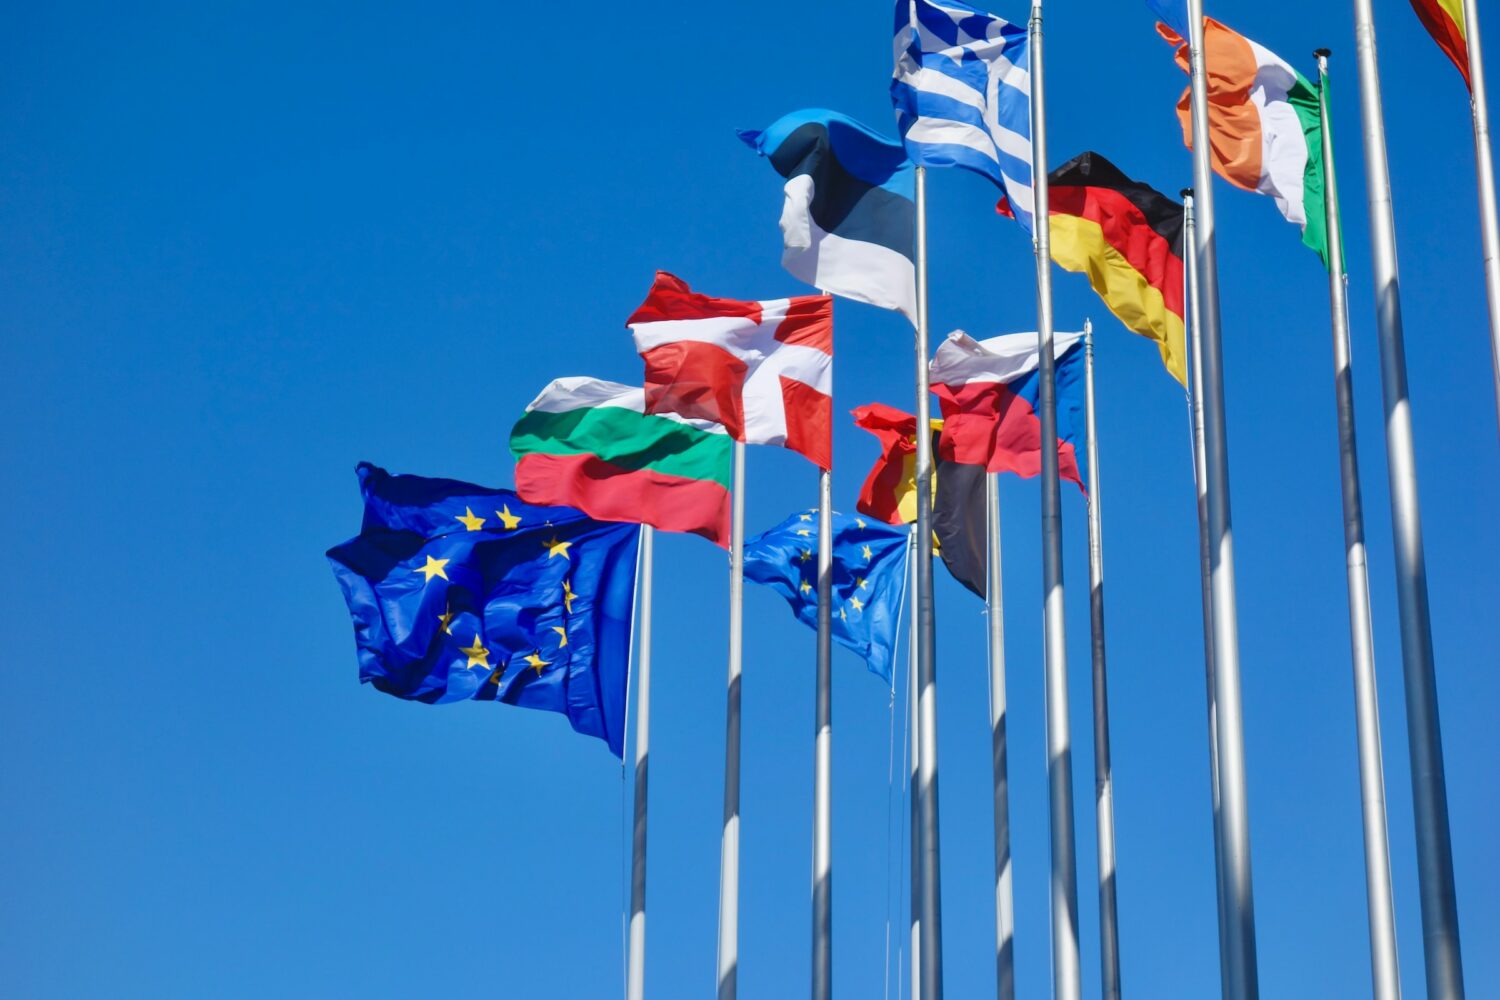 Bandeiras da UE e de países europeus no Parlamento Europeu, na cidade de Strasbourg, na França, em um dia de céu azul intenso e sem nuvens, ilustrando o post sobre o ETIAS